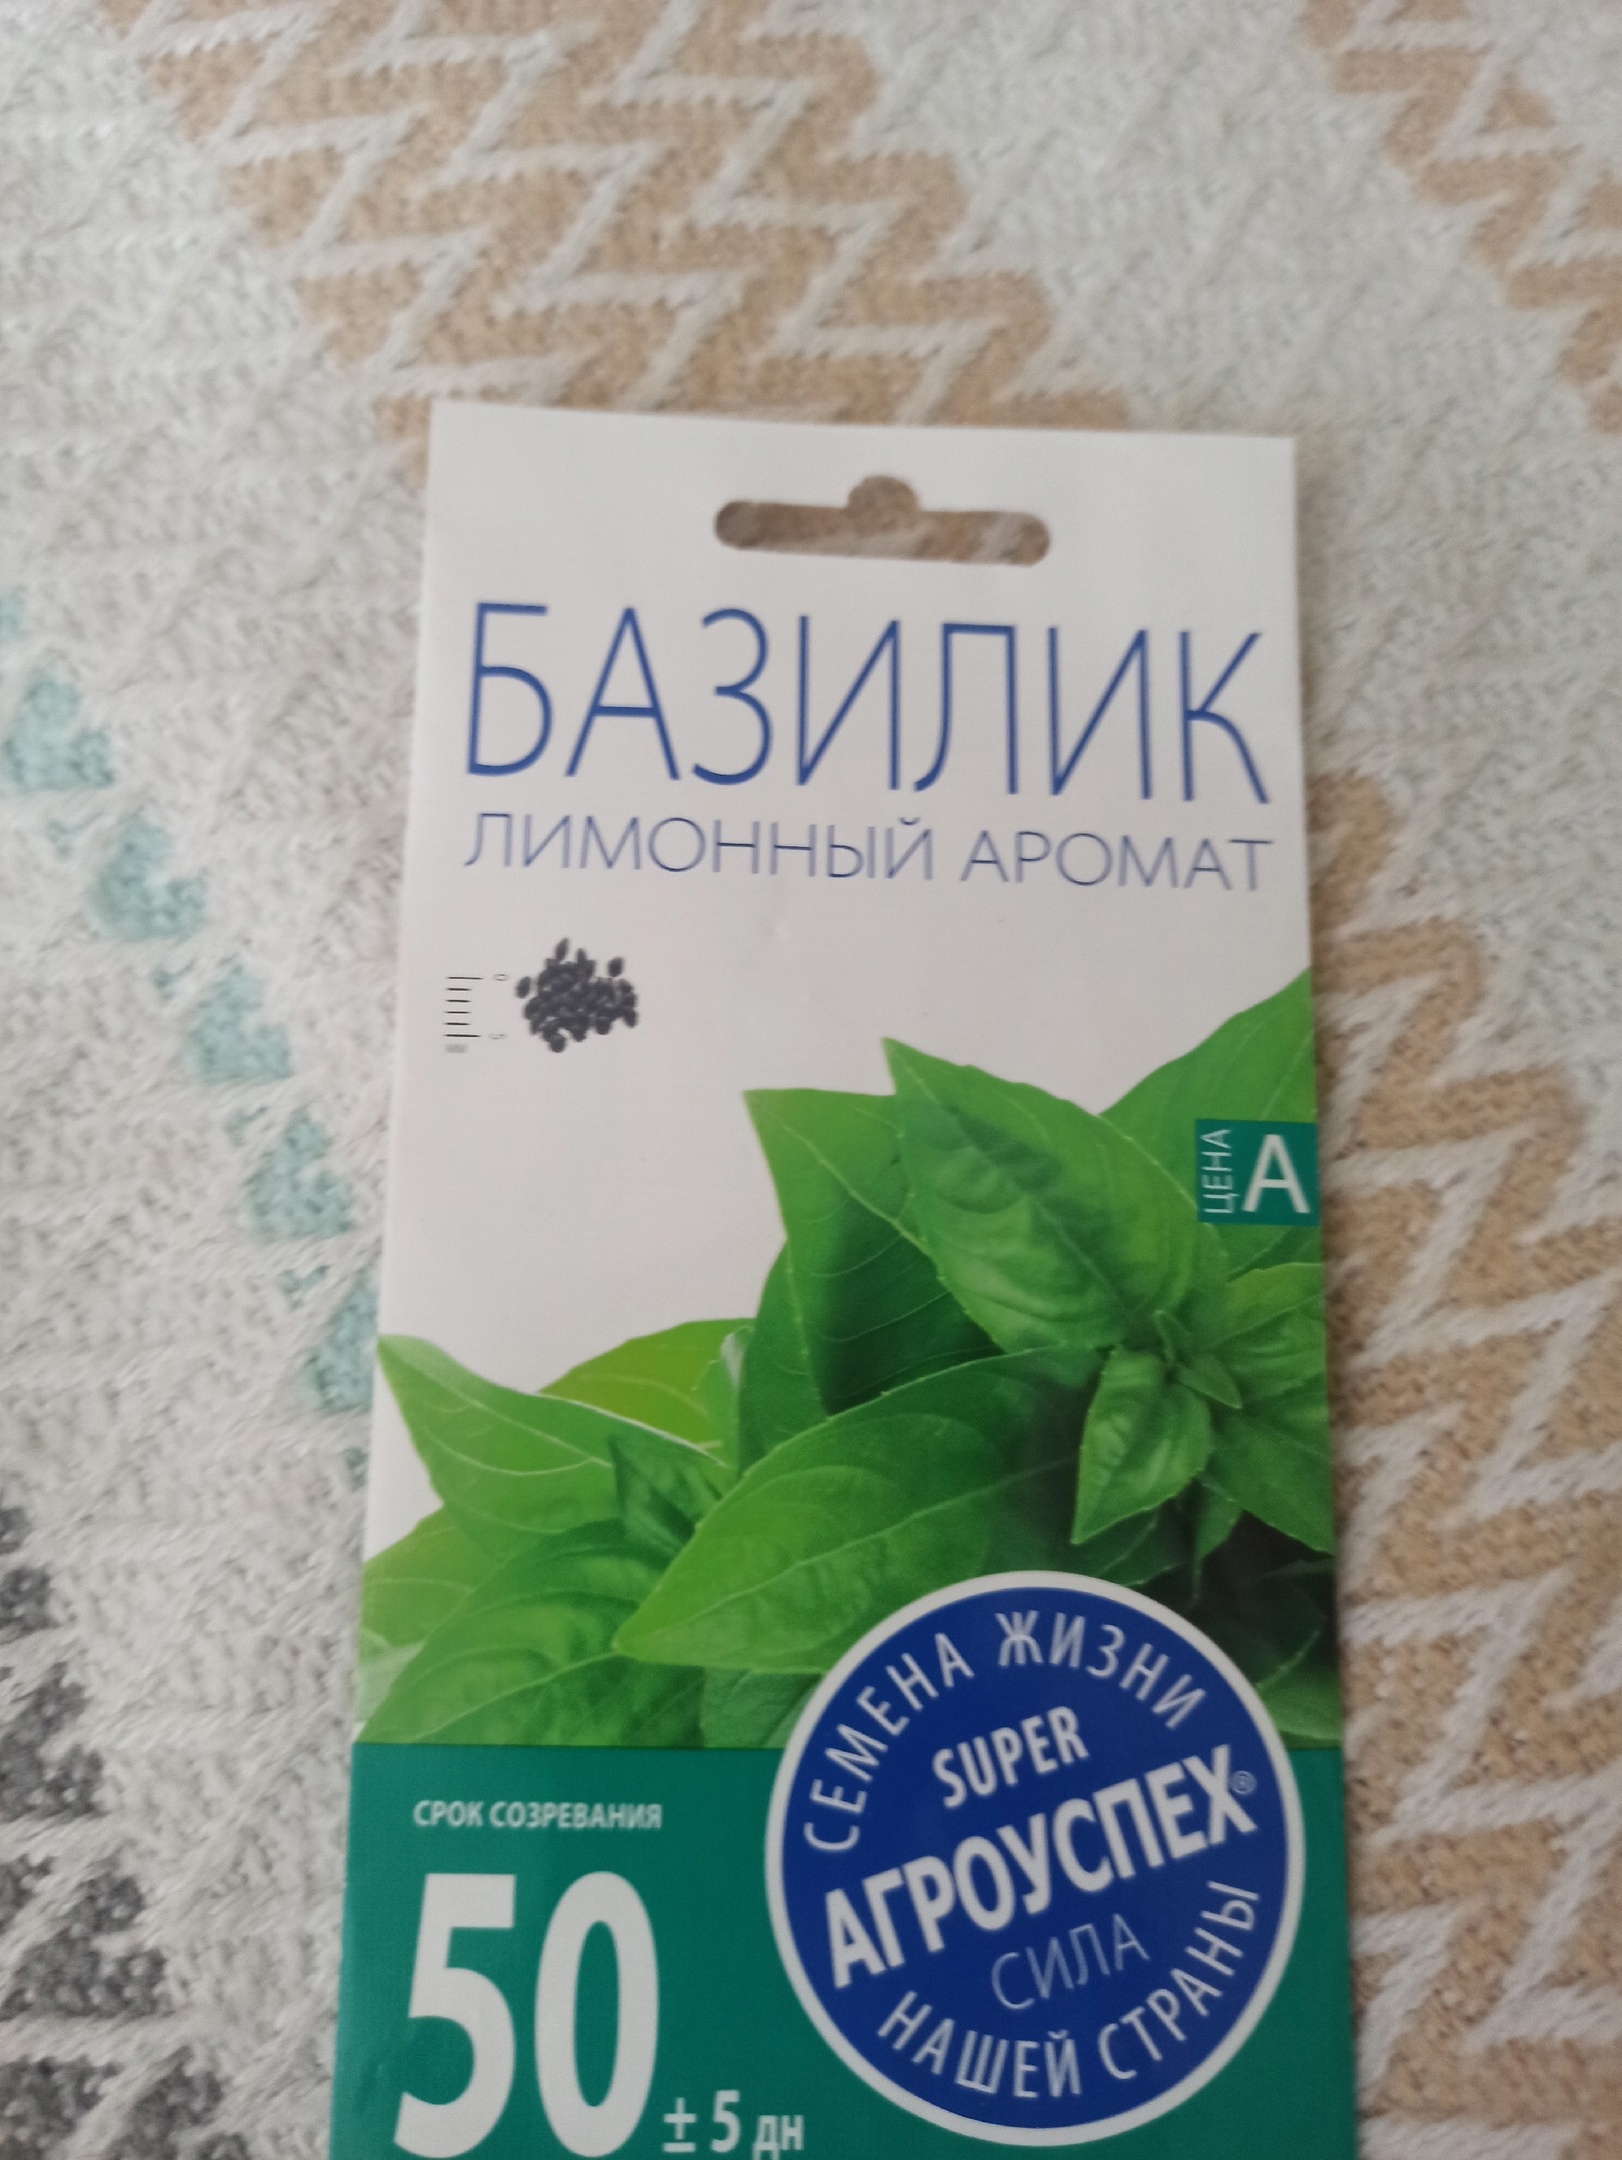 Семена базилик Агроуспех Лимонный 1 уп. - купить в Москве, цены наМегамаркет